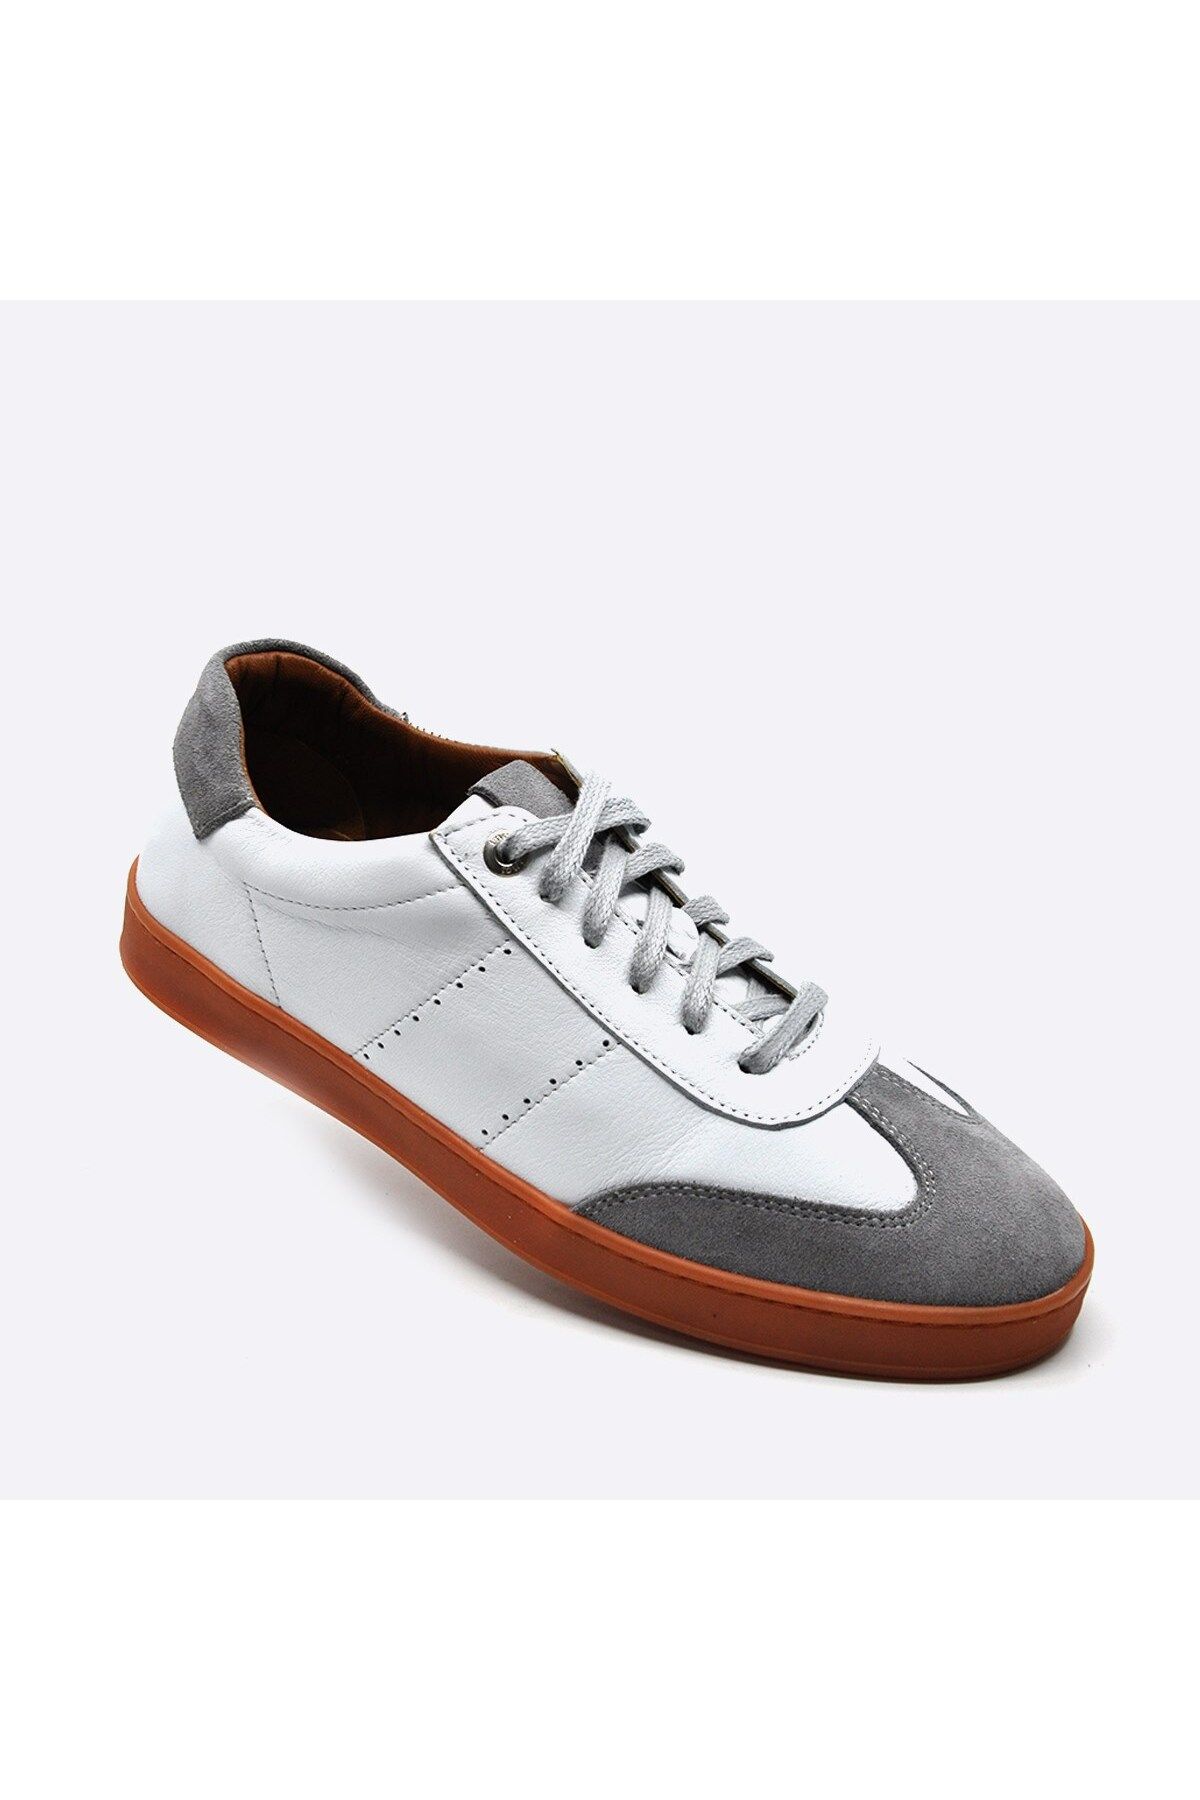 Fosco Hakiki Deri Beyaz Sneaker Spor Erkek Ayakkabı 9881 105